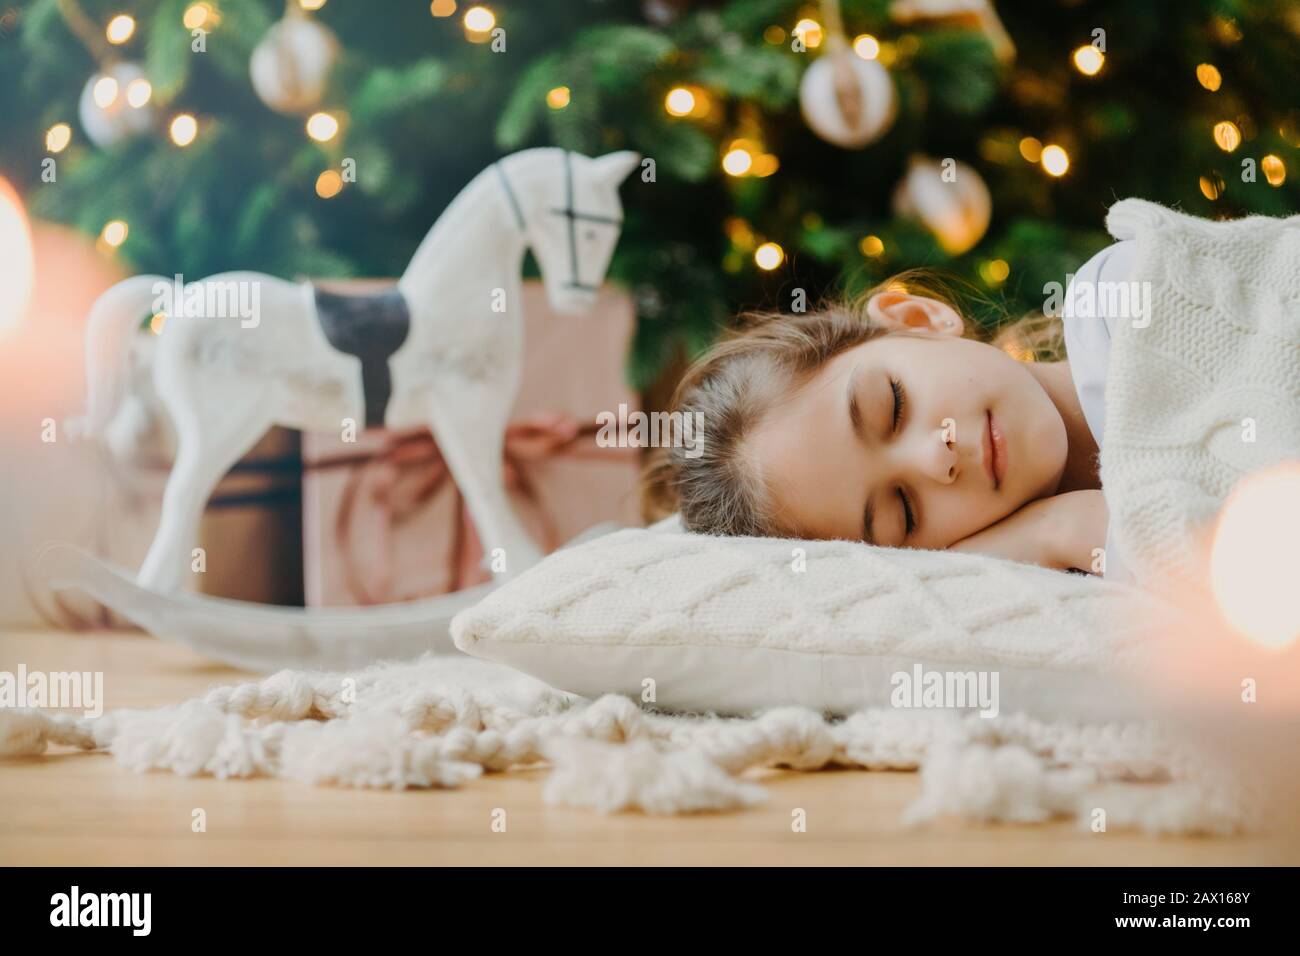 Sparo orizzontale di ragazza rilassata coperta di maglione bianco, ha sogni piacevoli, si trova sotto albero di Natale decorato, giocattolo rocker e scatole regalo intorno Foto Stock